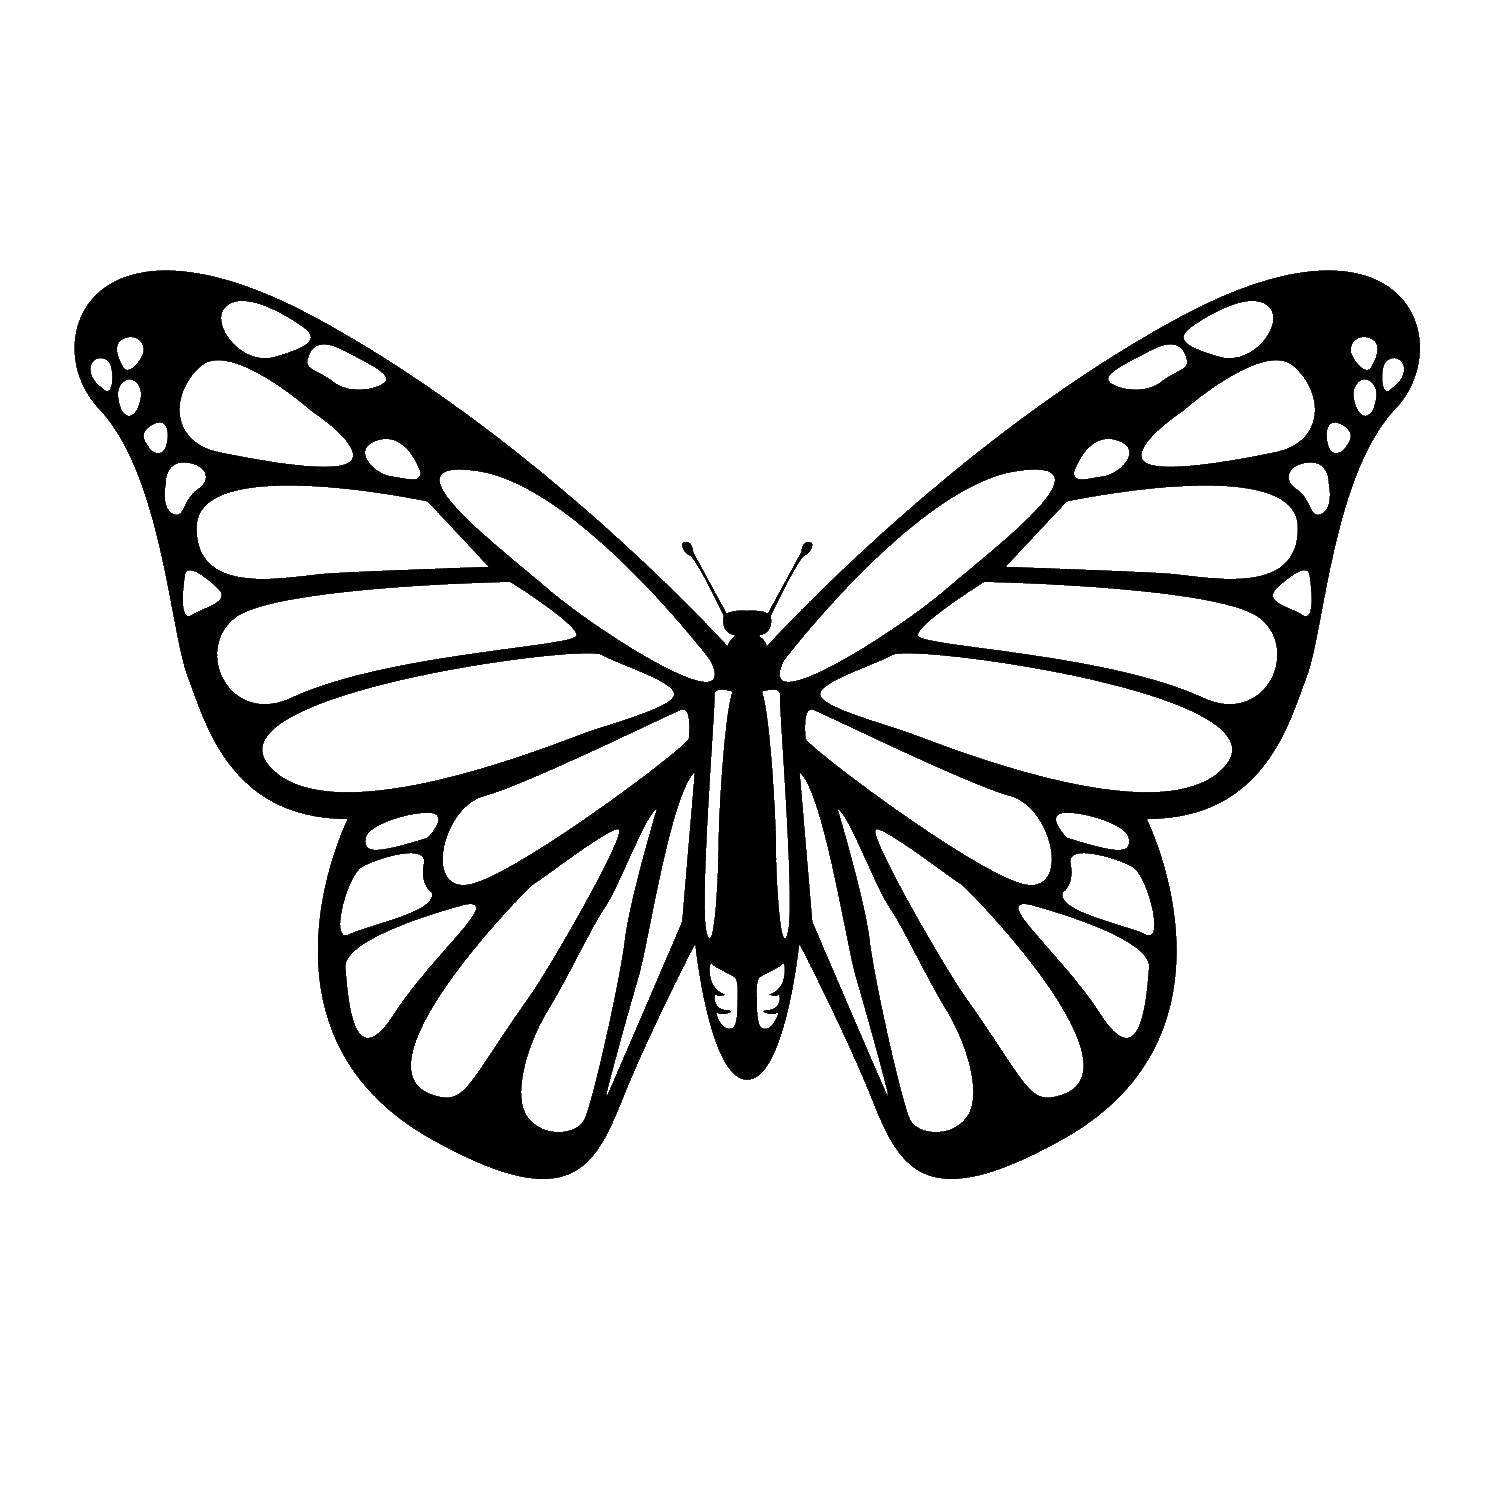 Контур для вырезания бабочек - раскраска (контур, бабочки)